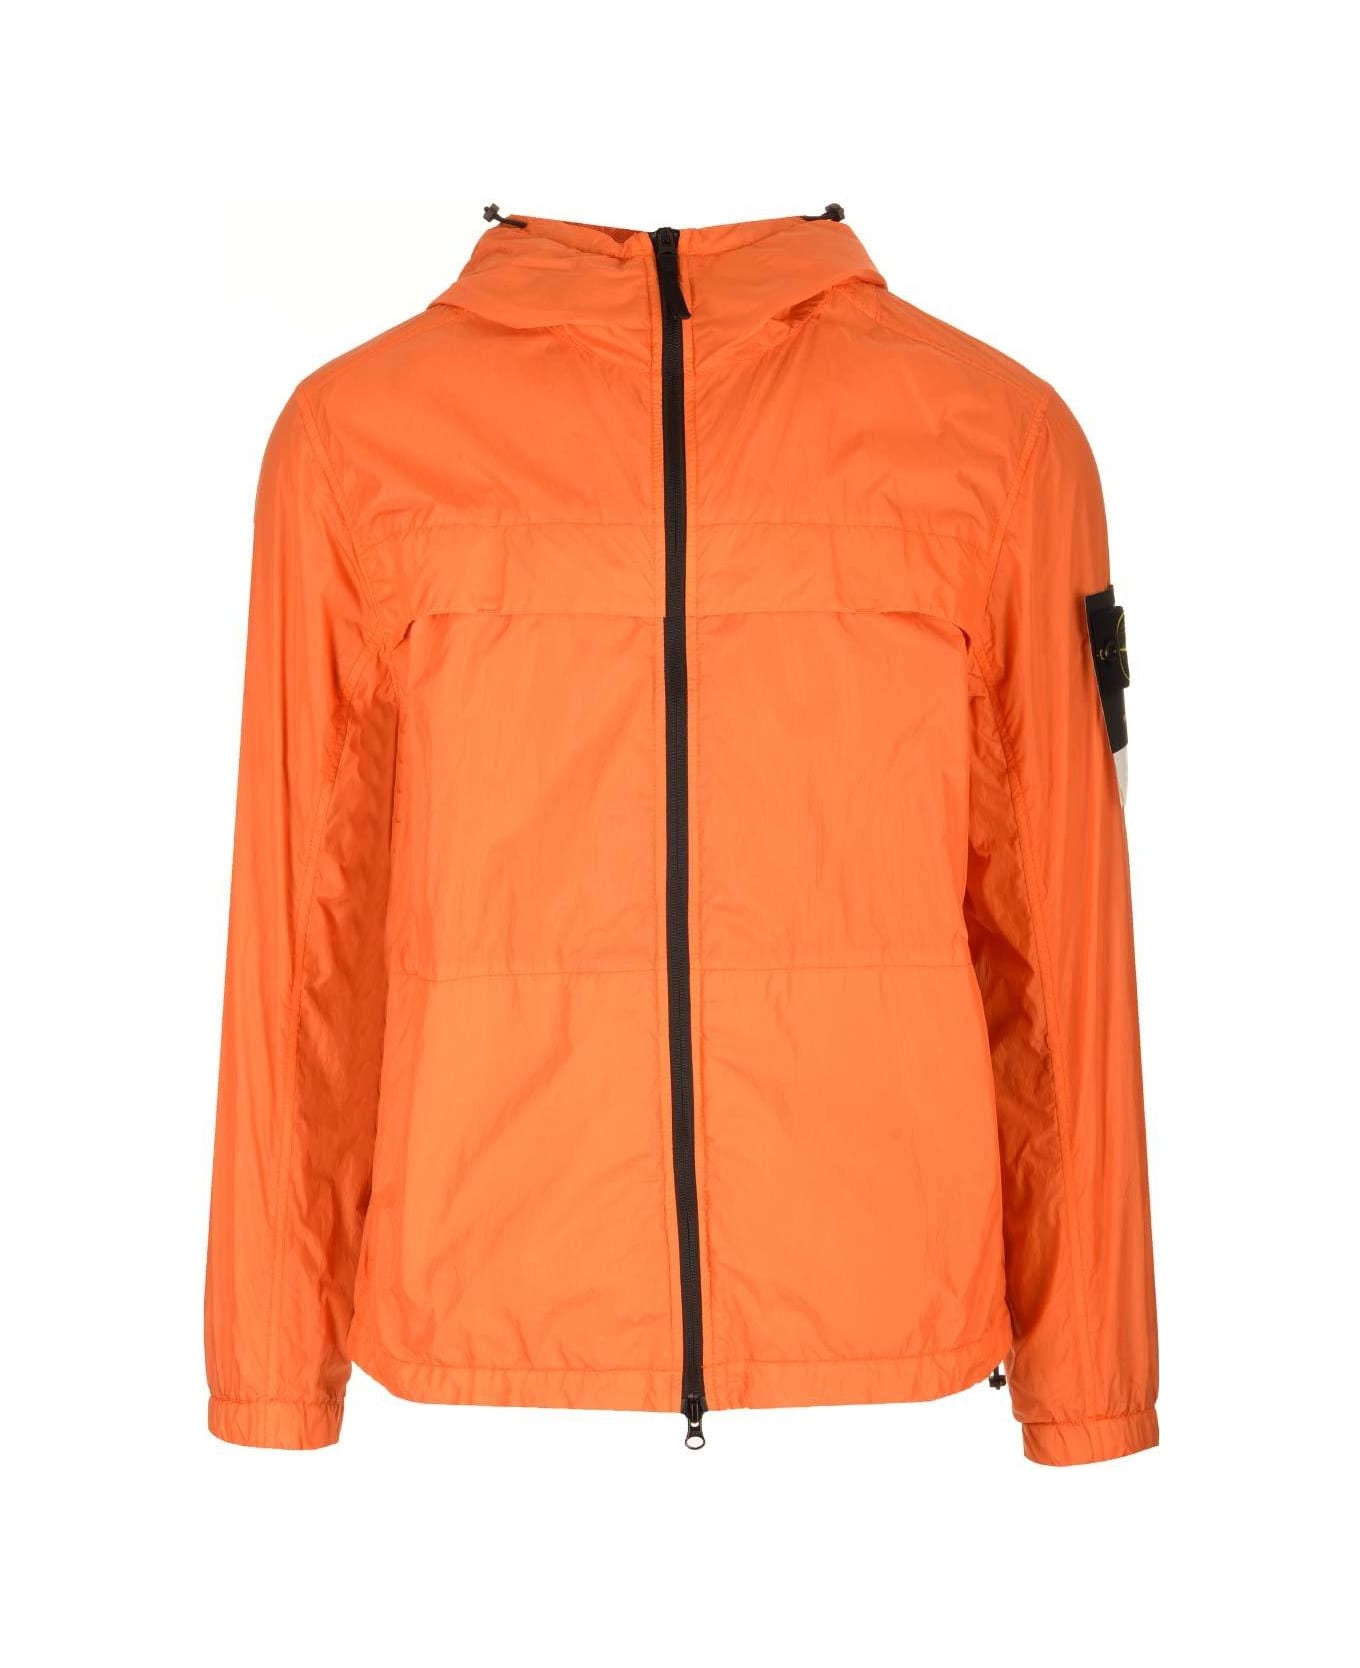 Stone Island Zip-up Hooded Jacket - Orange